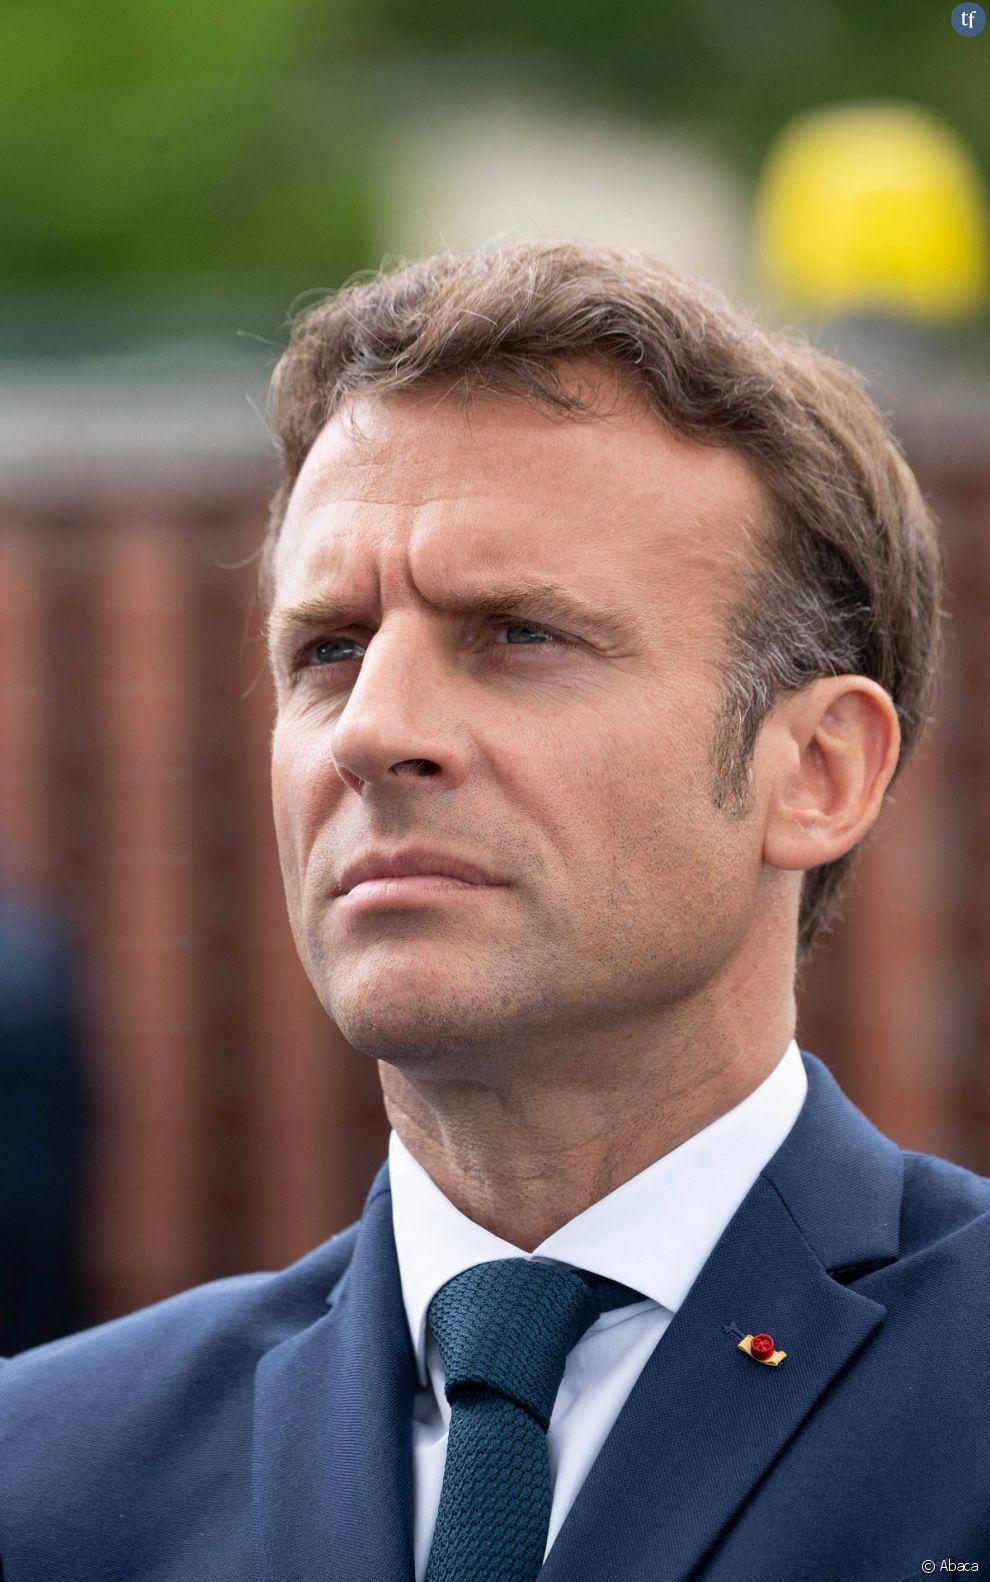 &quot;A la tête de l&#039;Etat, des hommes sont accusés de viol&quot; : une lycéenne interpelle Emmanuel Macron